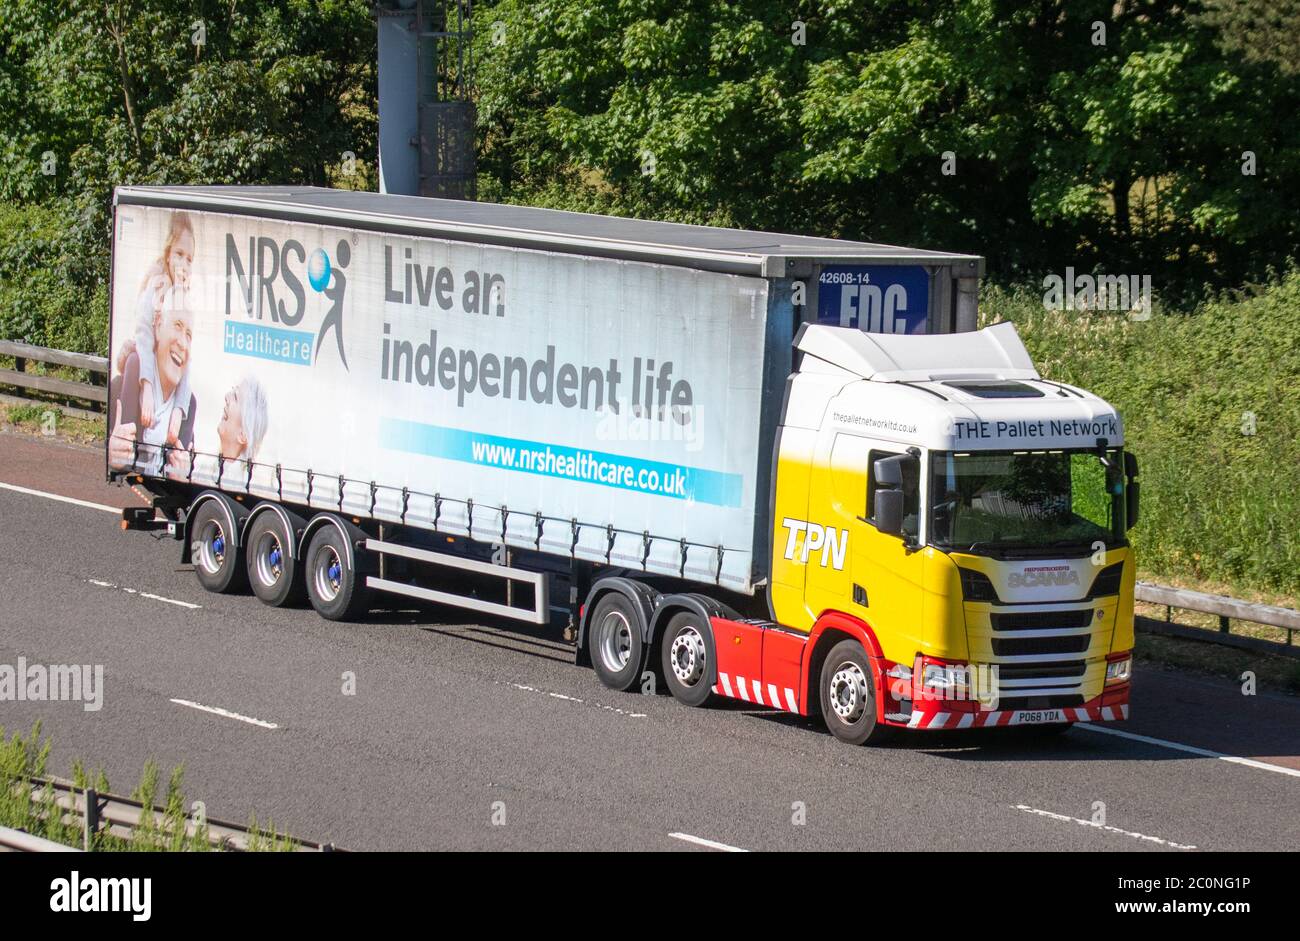 TPN la red de palets camiones de entrega de transporte. NRS Healthcare camión, transporte, camión, transporte de carga, vehículo Scania, industria europea de transporte comercial HGV, M6 en Manchester, Reino Unido Foto de stock